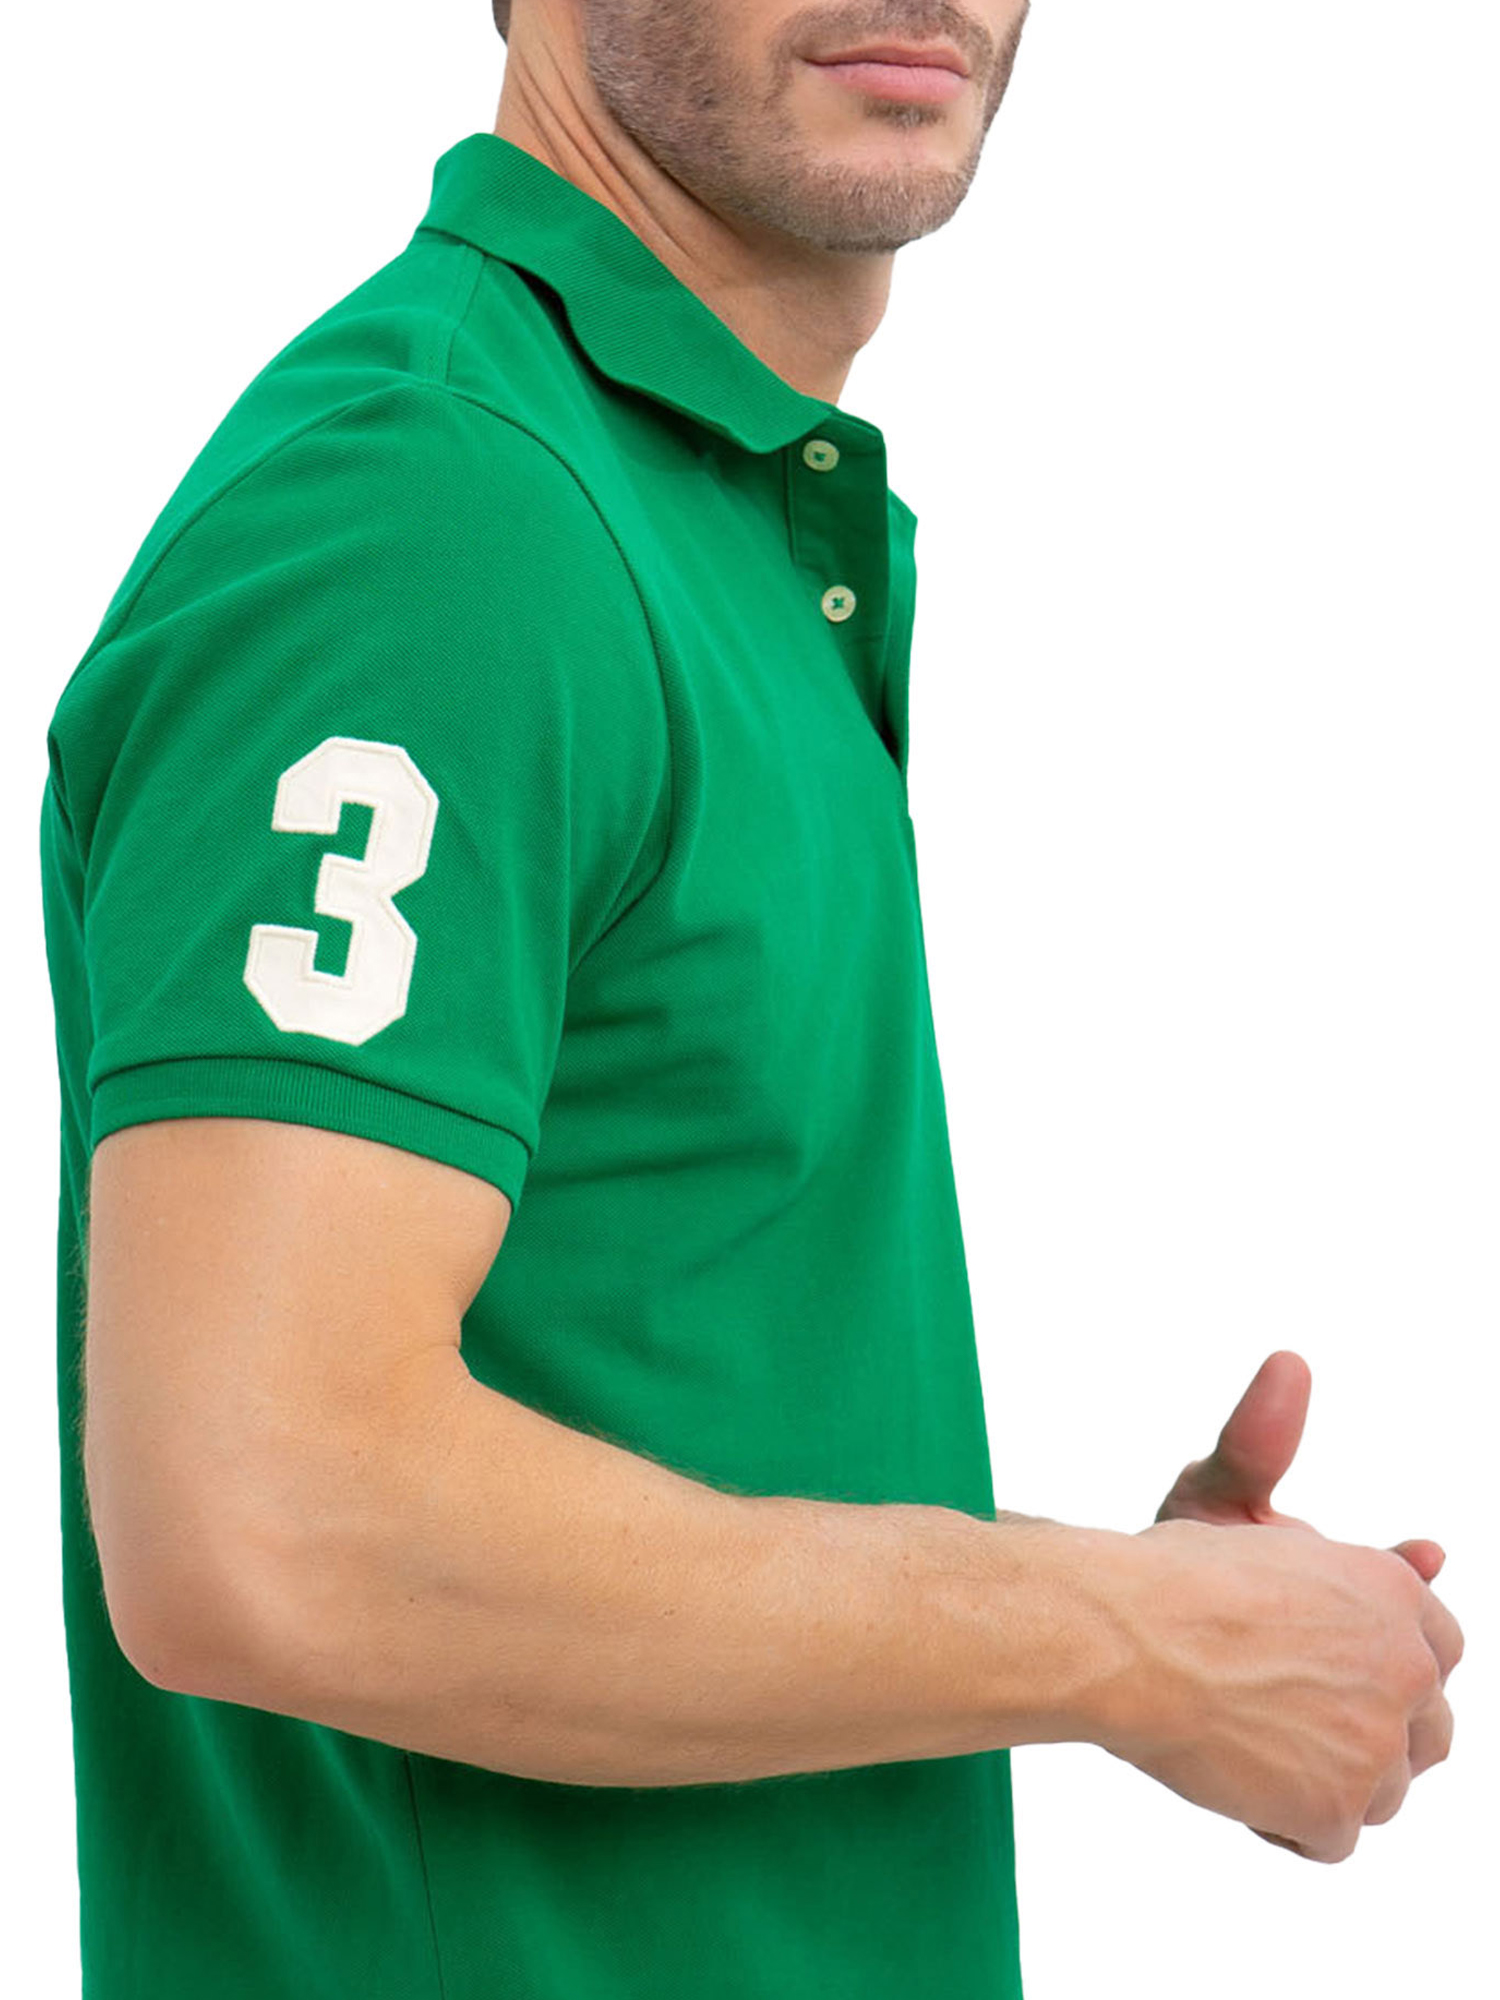 U.S. Polo Assn. Men's Solid Pique Polo Shirt - image 2 of 3